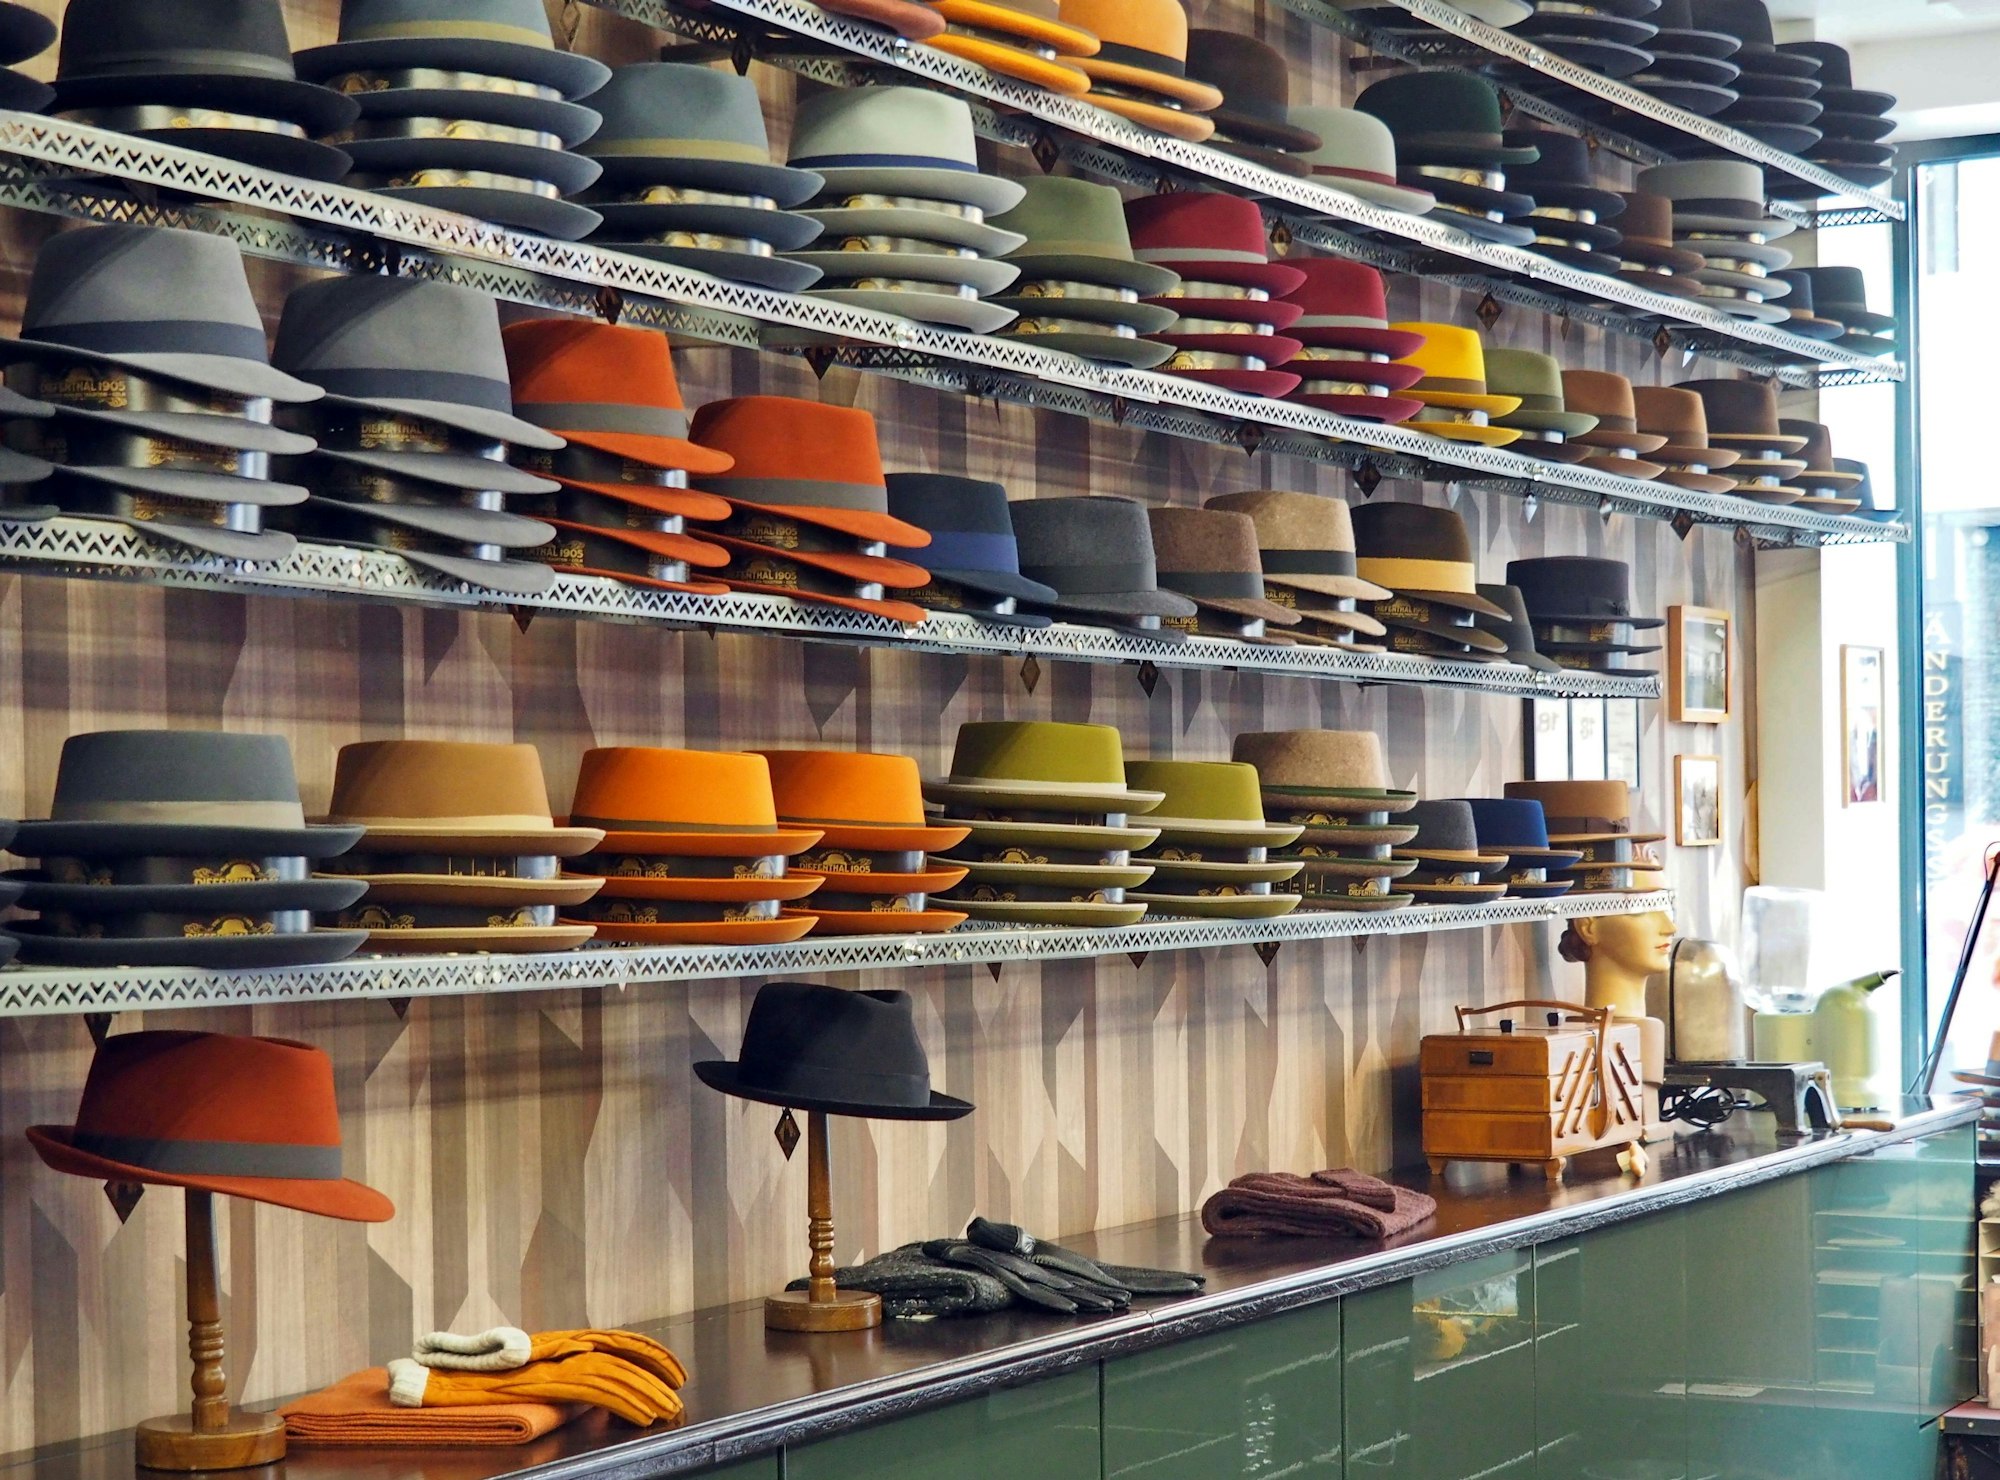 Hüte in verschiedenen Formen und Farben liegen auf langen Regalen.